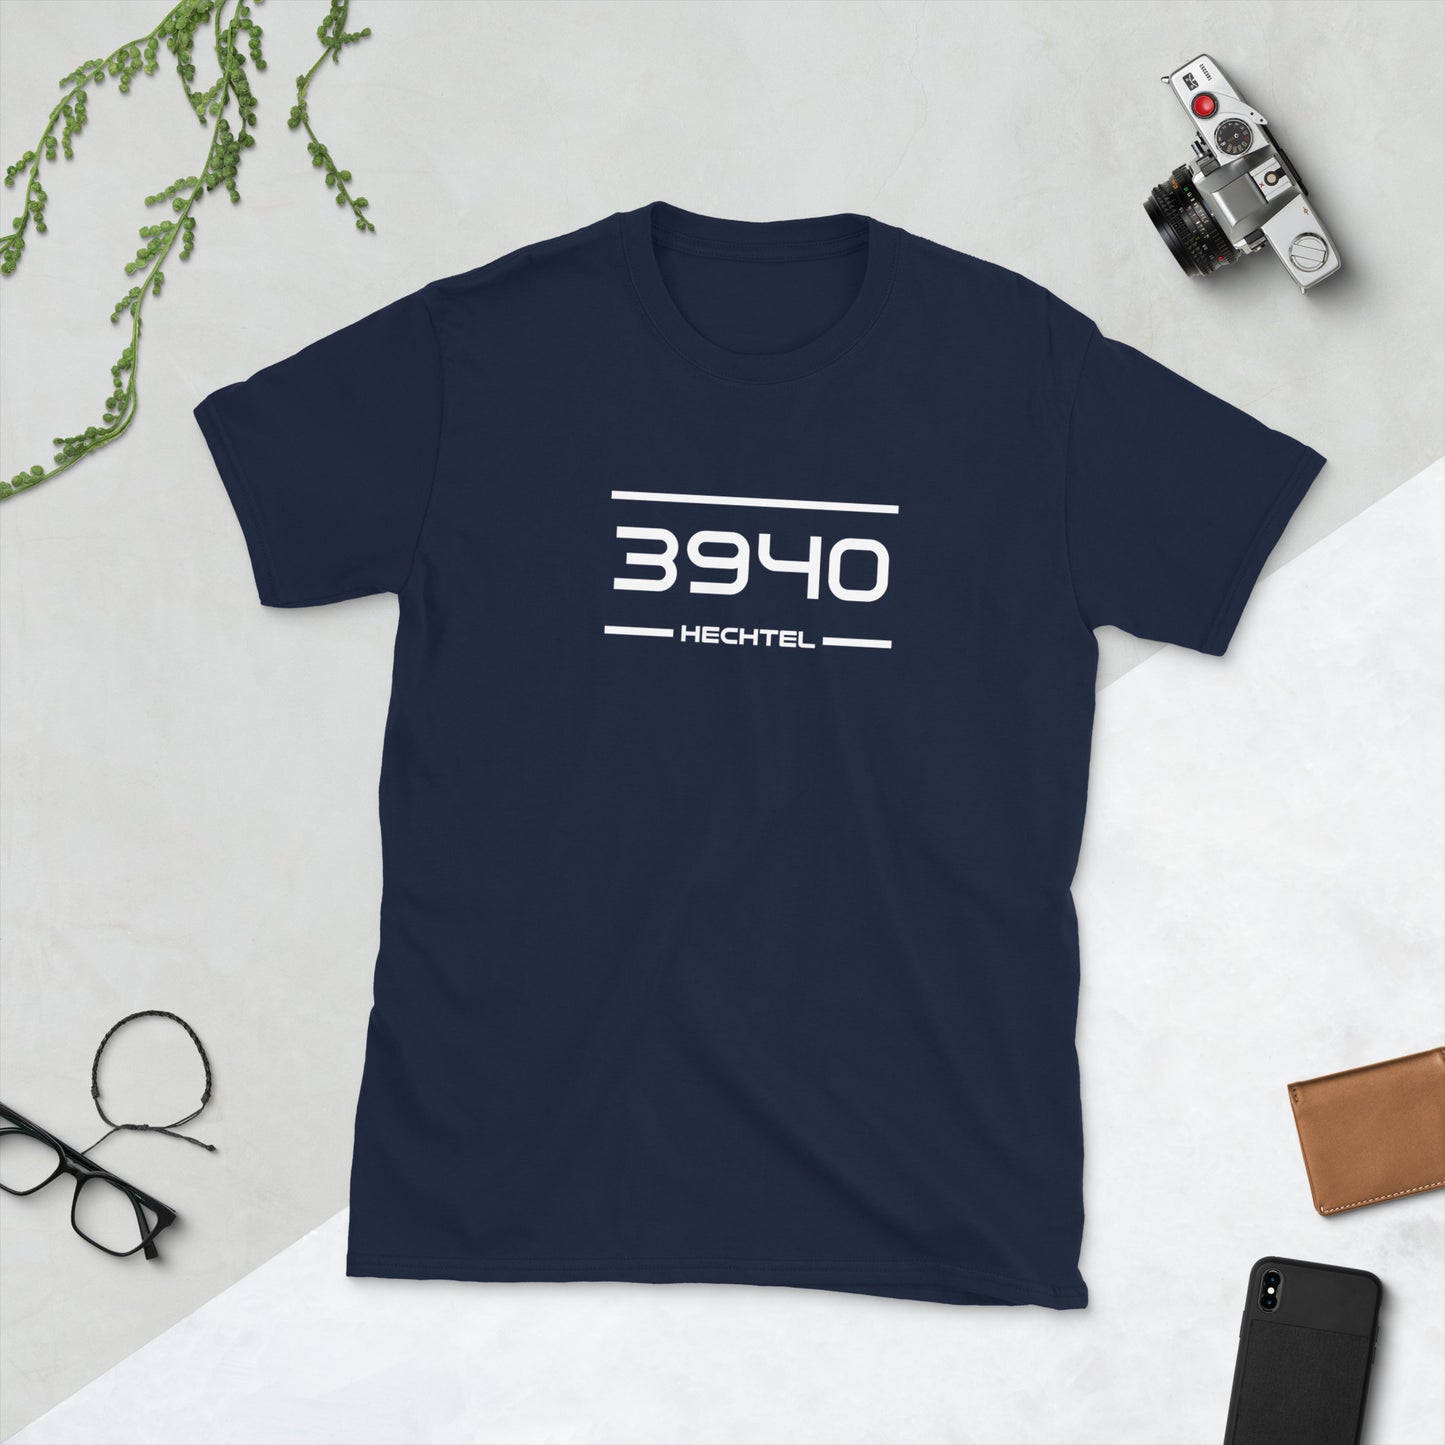 Tshirt - 3940 - Hechtel